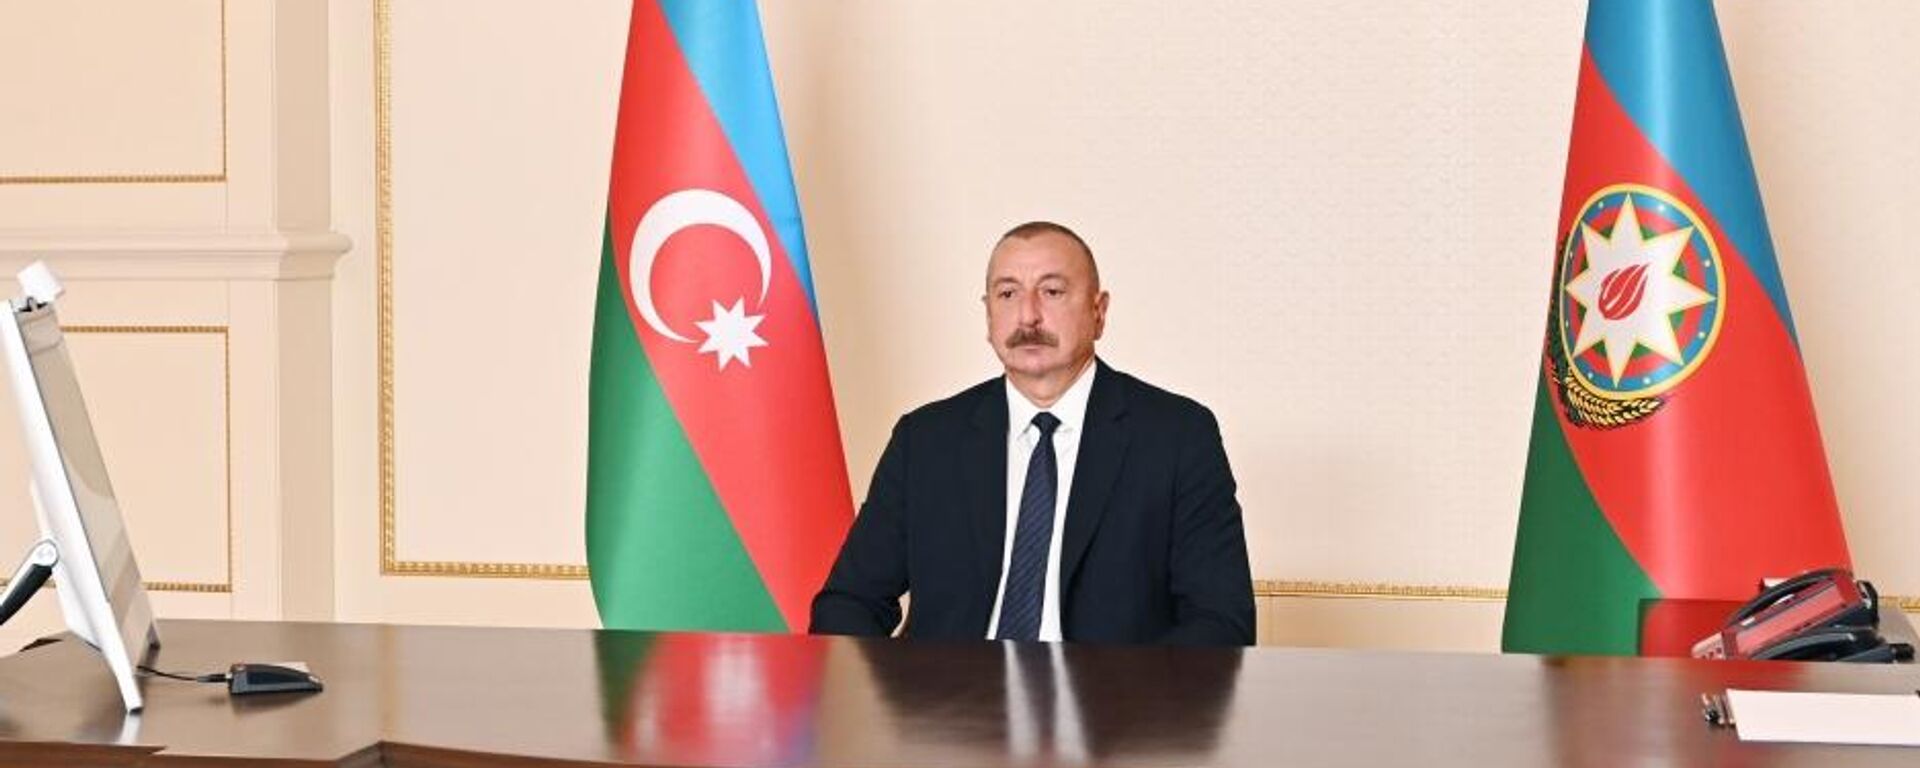 Президент Азербайджана Ильхам Алиев 7 октября дал интервью итальянской газете La Repubblica - Sputnik Азербайджан, 1920, 13.10.2021